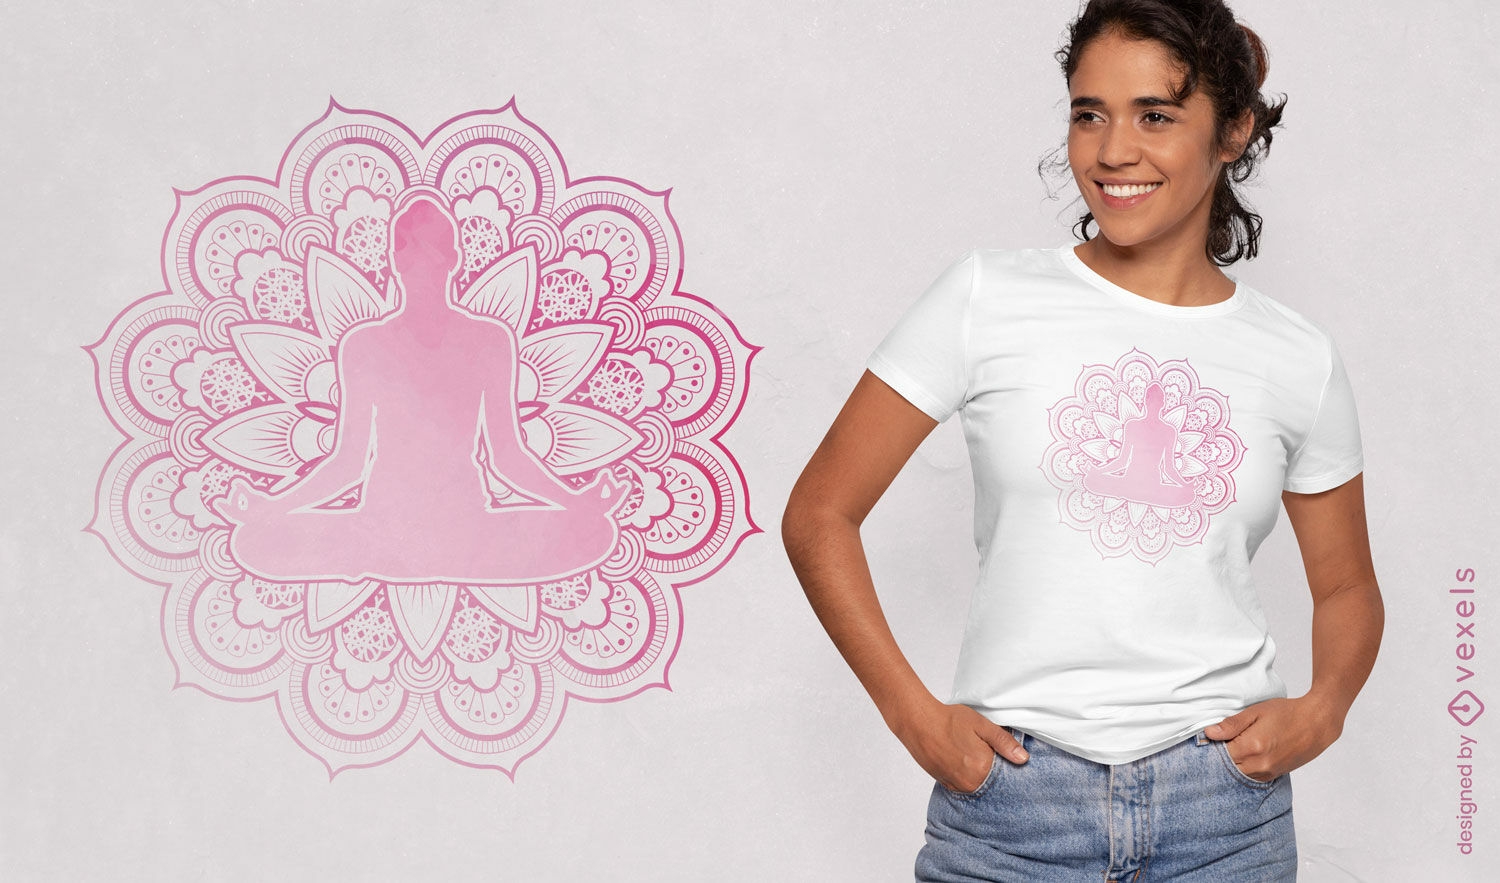 Descarga Vector De Diseño De Camiseta Espiritual De Mujer De Yoga Rosa.